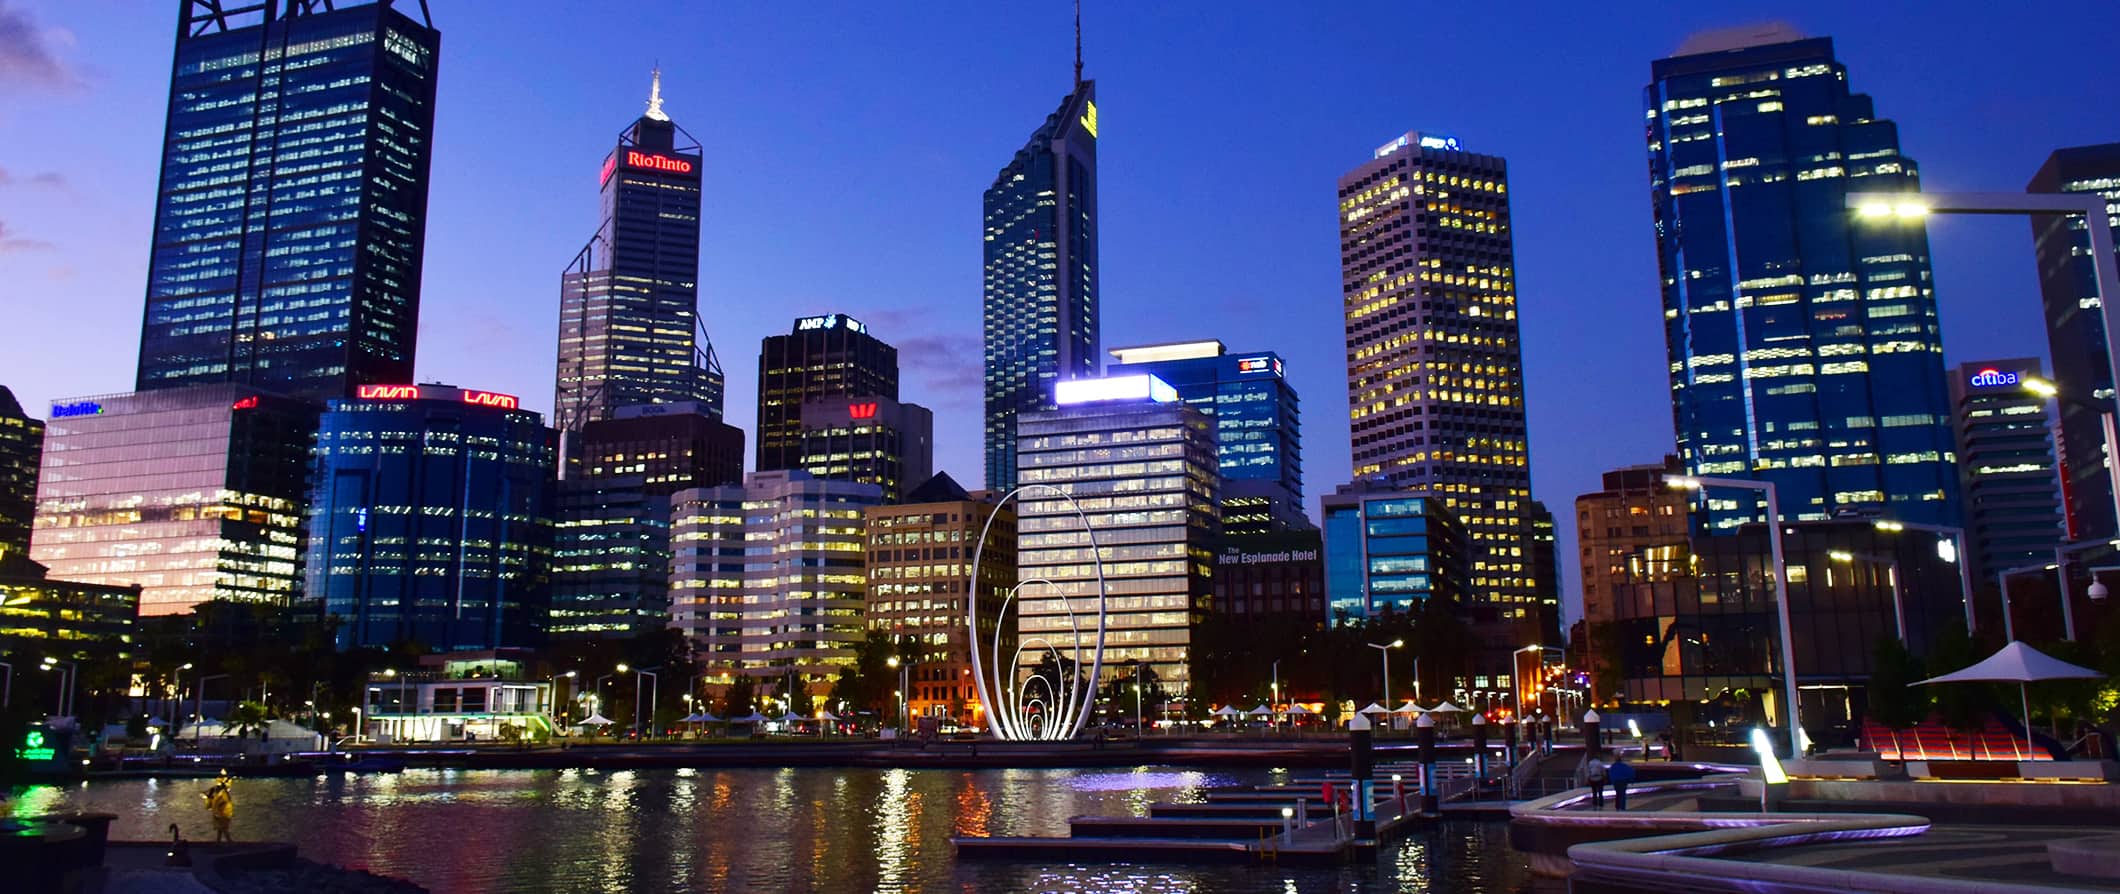 O imponente horizonte da cidade australiana de Perth iluminado à noite